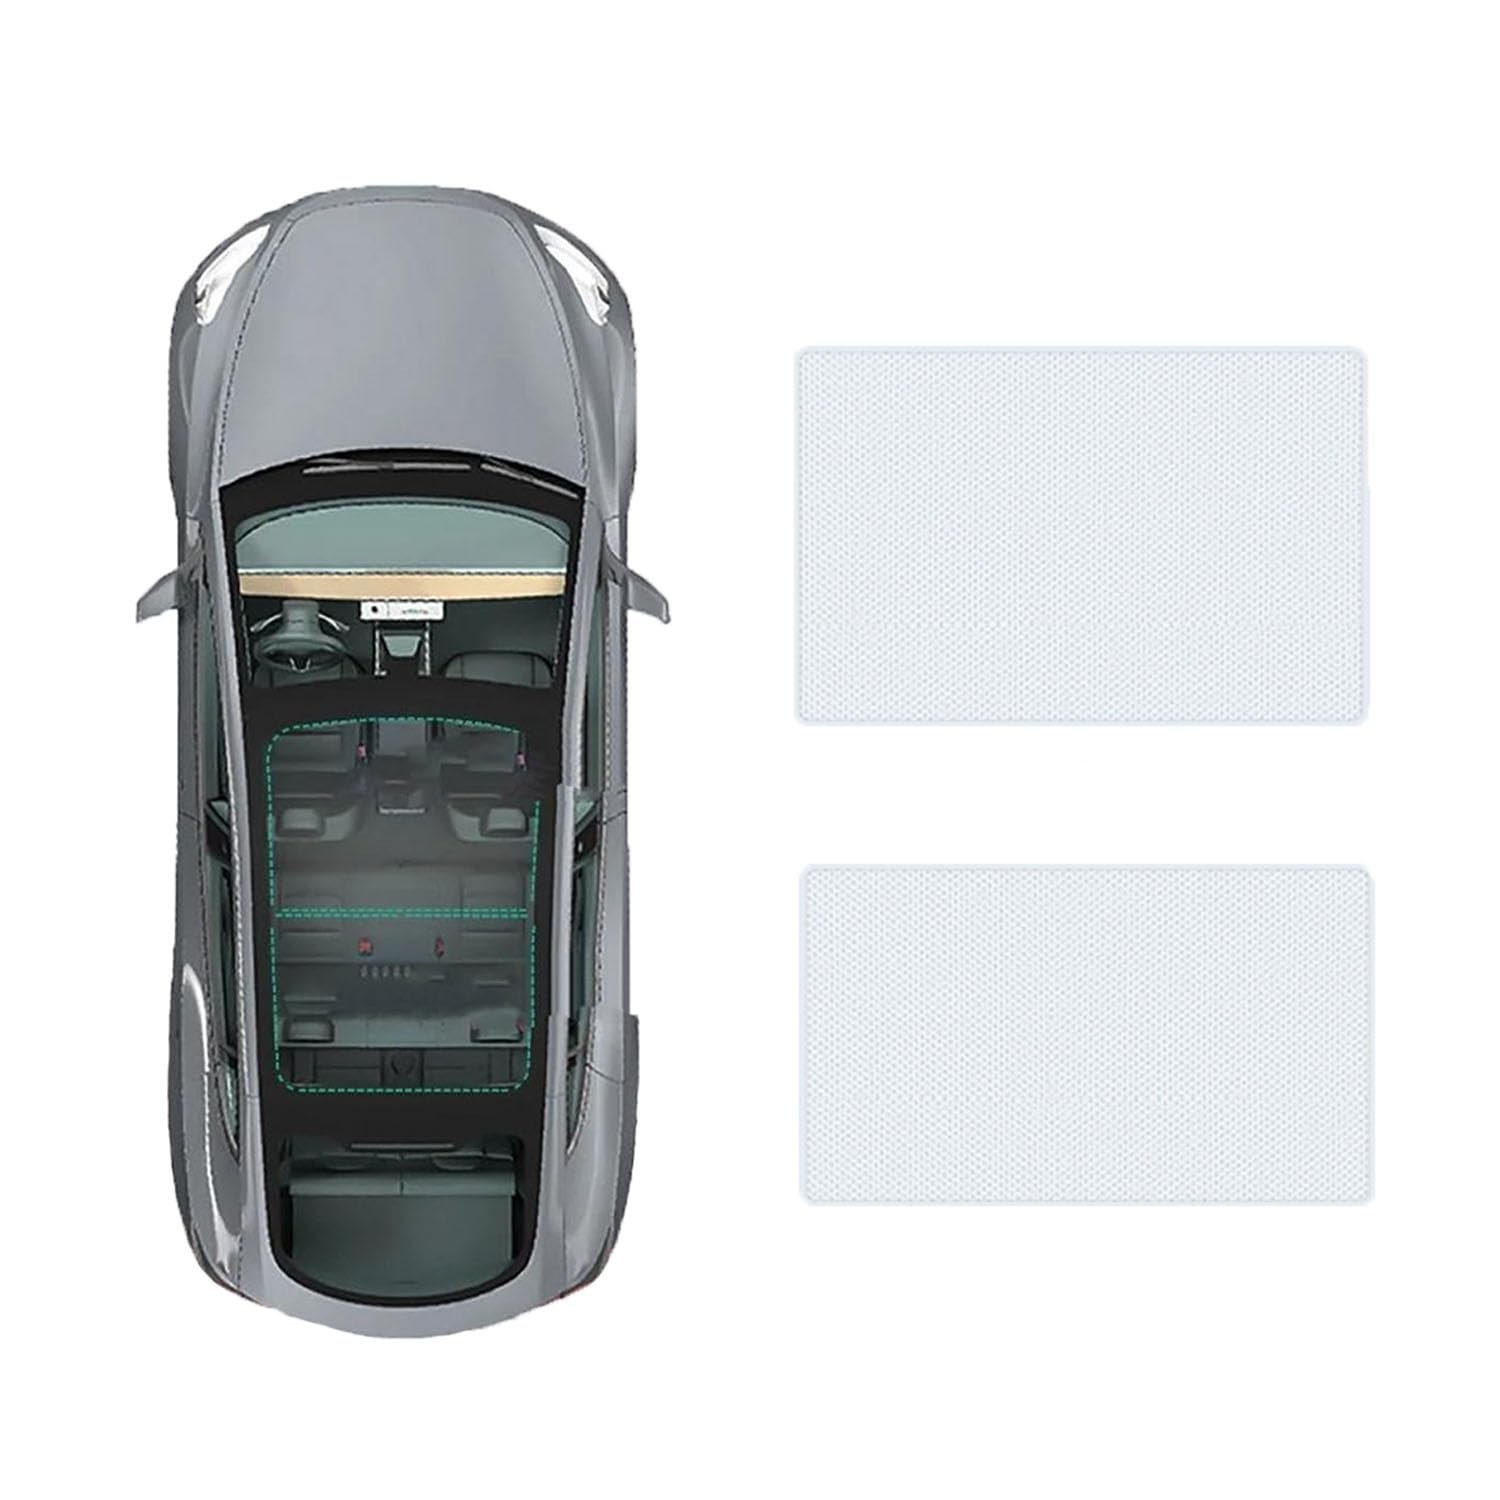 Sonnendach Sonnenschutz für VW Touran 2011- Faltbarer SchiebedachSonnenblenden Wärmedämmung Abdeckung Dachfenster UV-Schutz.,A-Gray white regular Style von UNGOOR